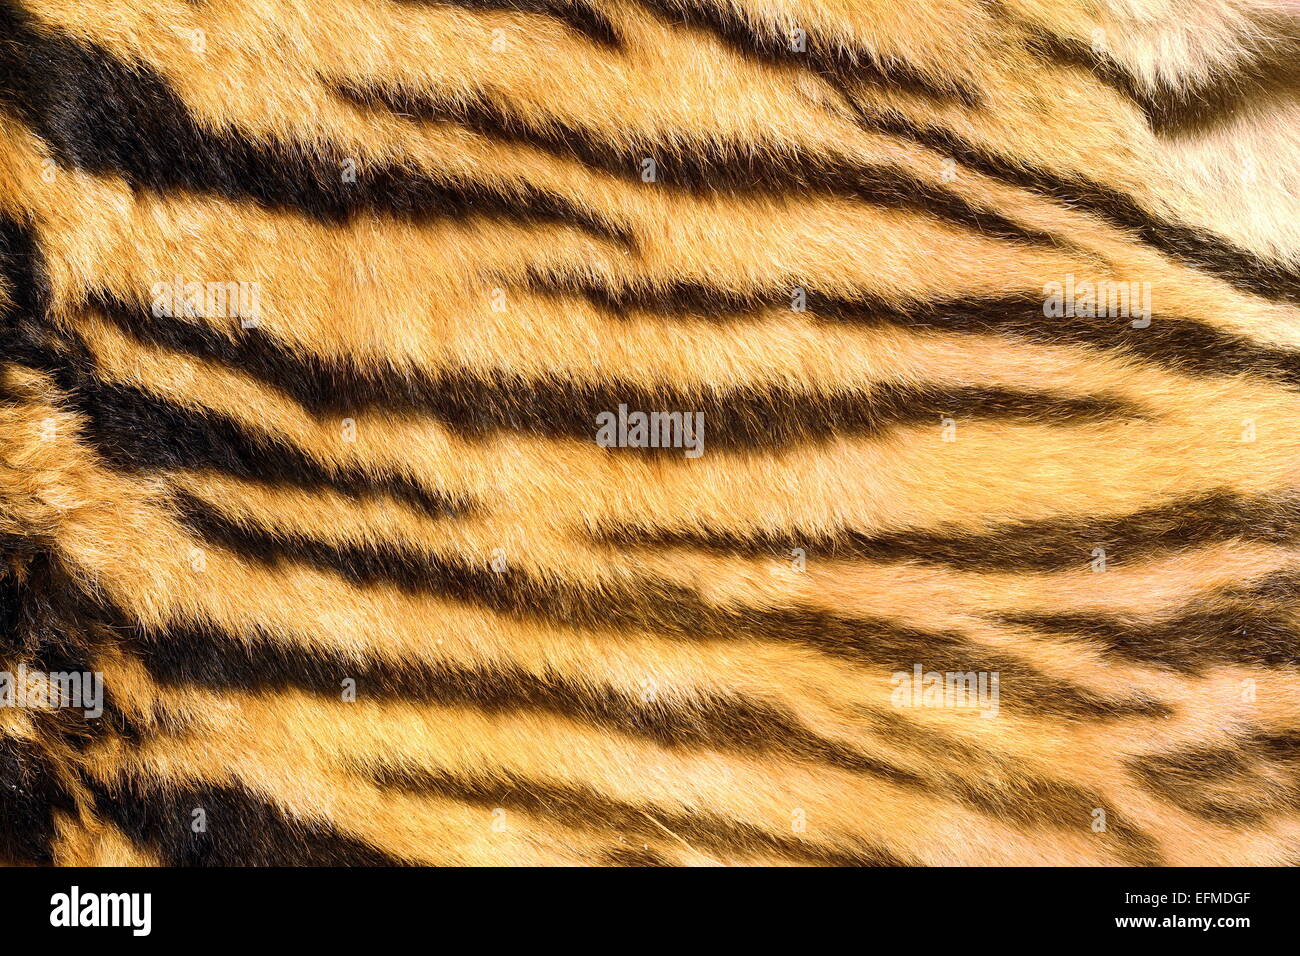 wilde Katze strukturierte Fell, dunkle natürliche Tigerstreifen auf echtes Fell Stockfoto